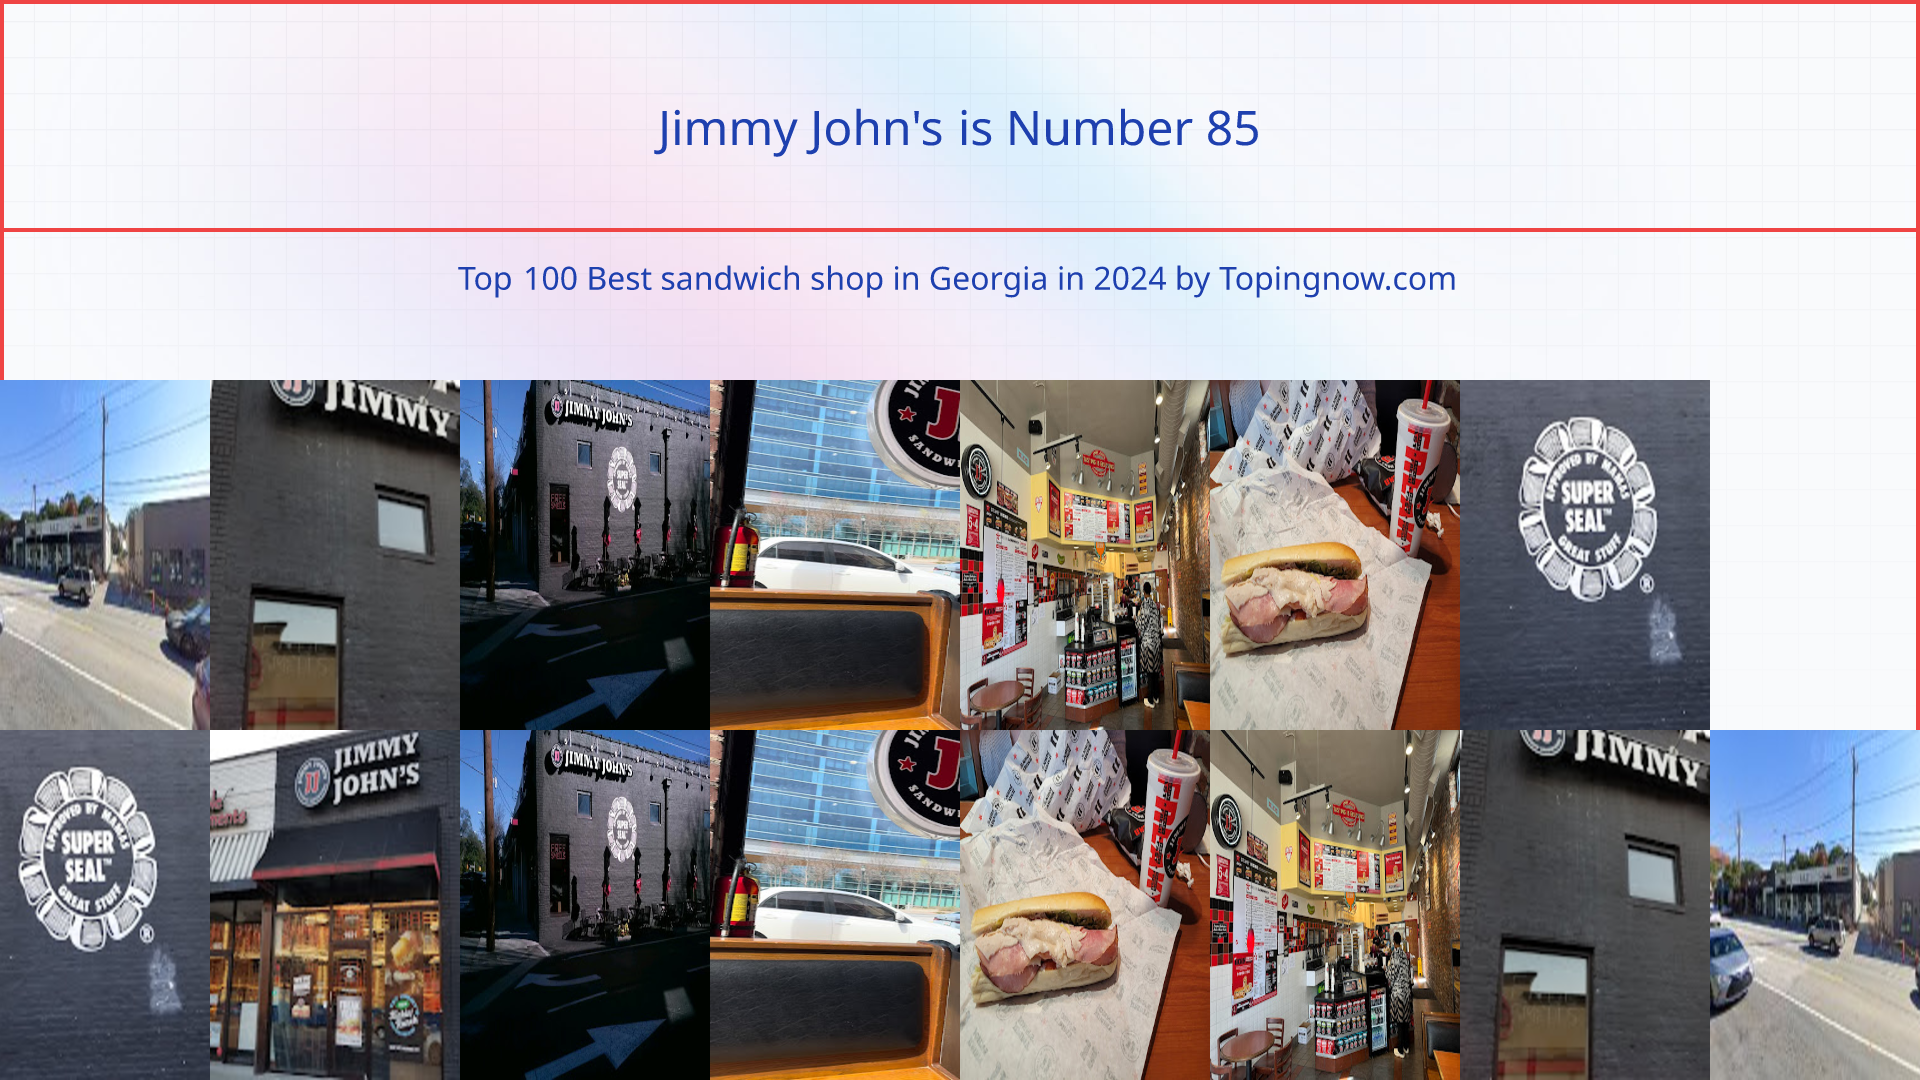 Jimmy John's: Top 100 Best sandwich shop in Georgia in 2024